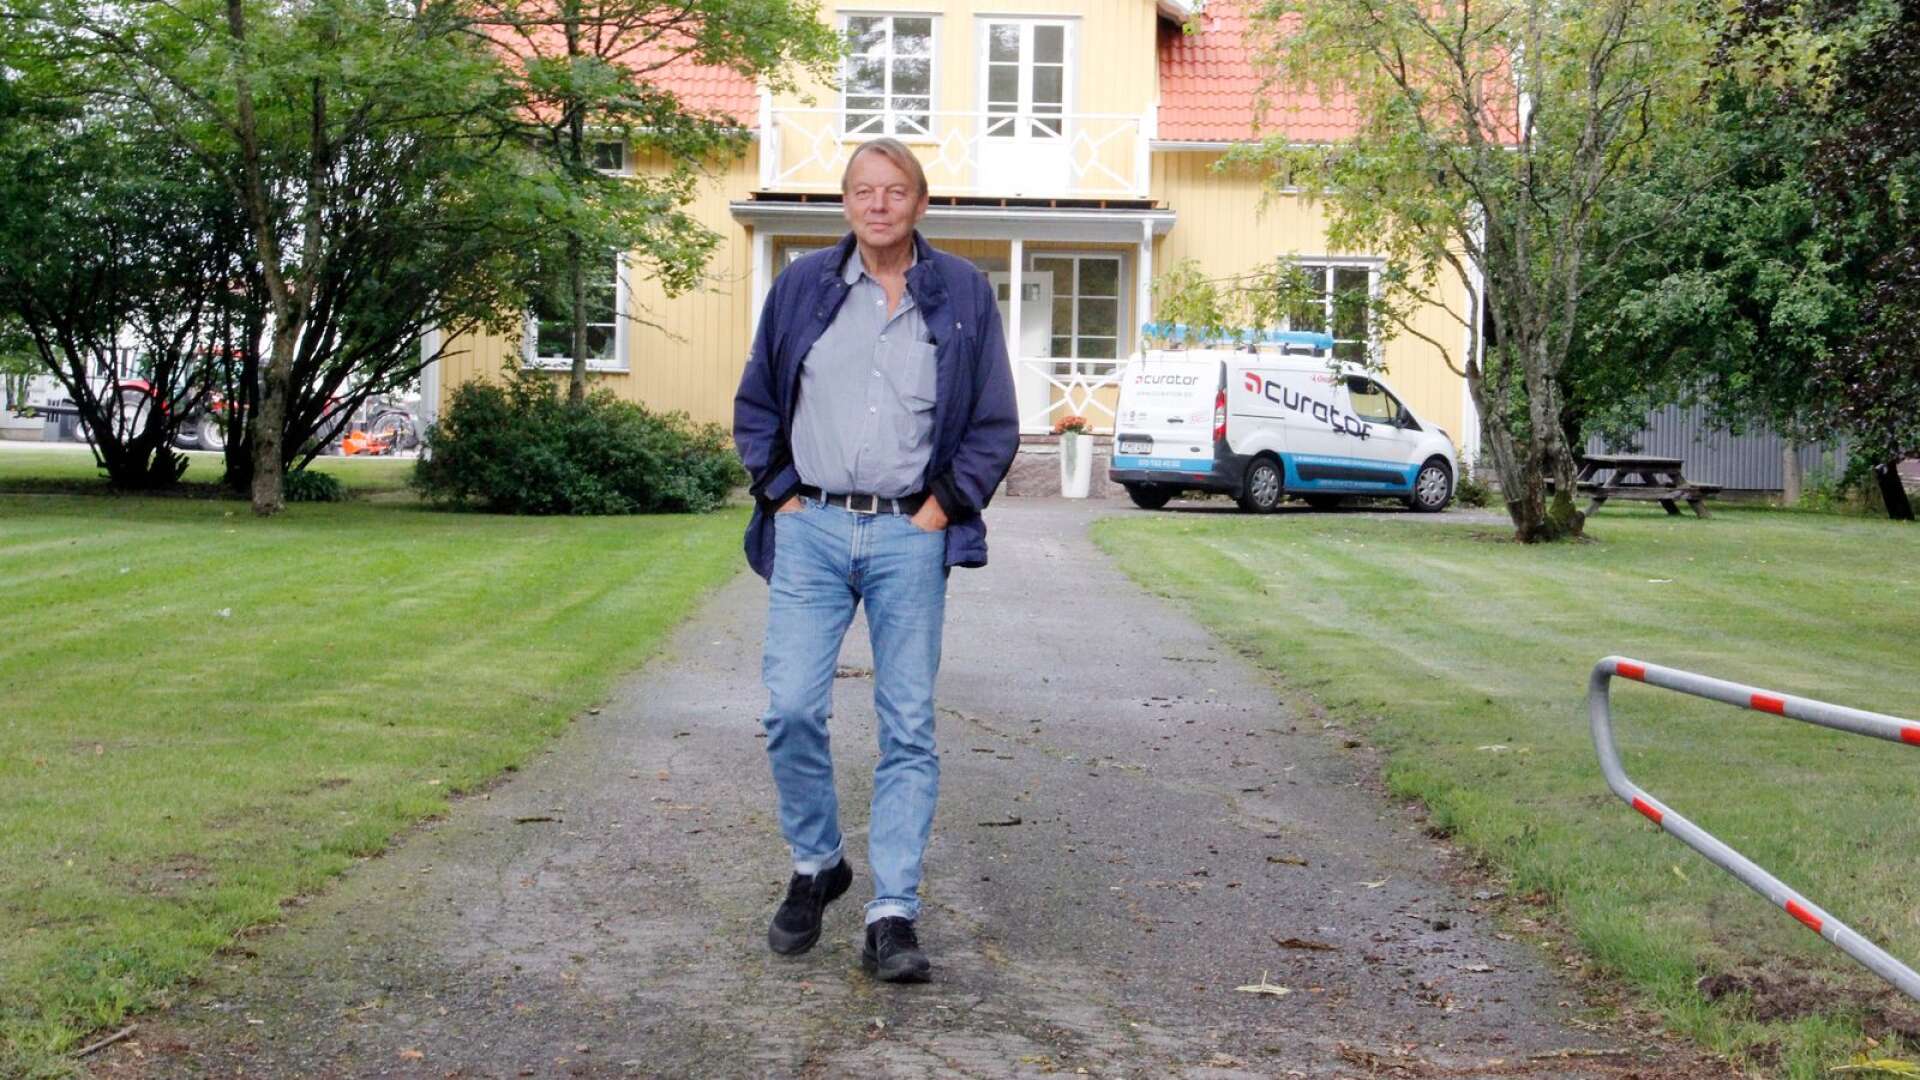 Nuntorp greppar efter sista halmstrået och får medhåll hos de dalsländska toppolitikerna. – Det känns skönt att alla de mäktiga politikerna håller med oss, säger Lars-Göran Berg, verksamhetsledare för Naturbruk Väst.